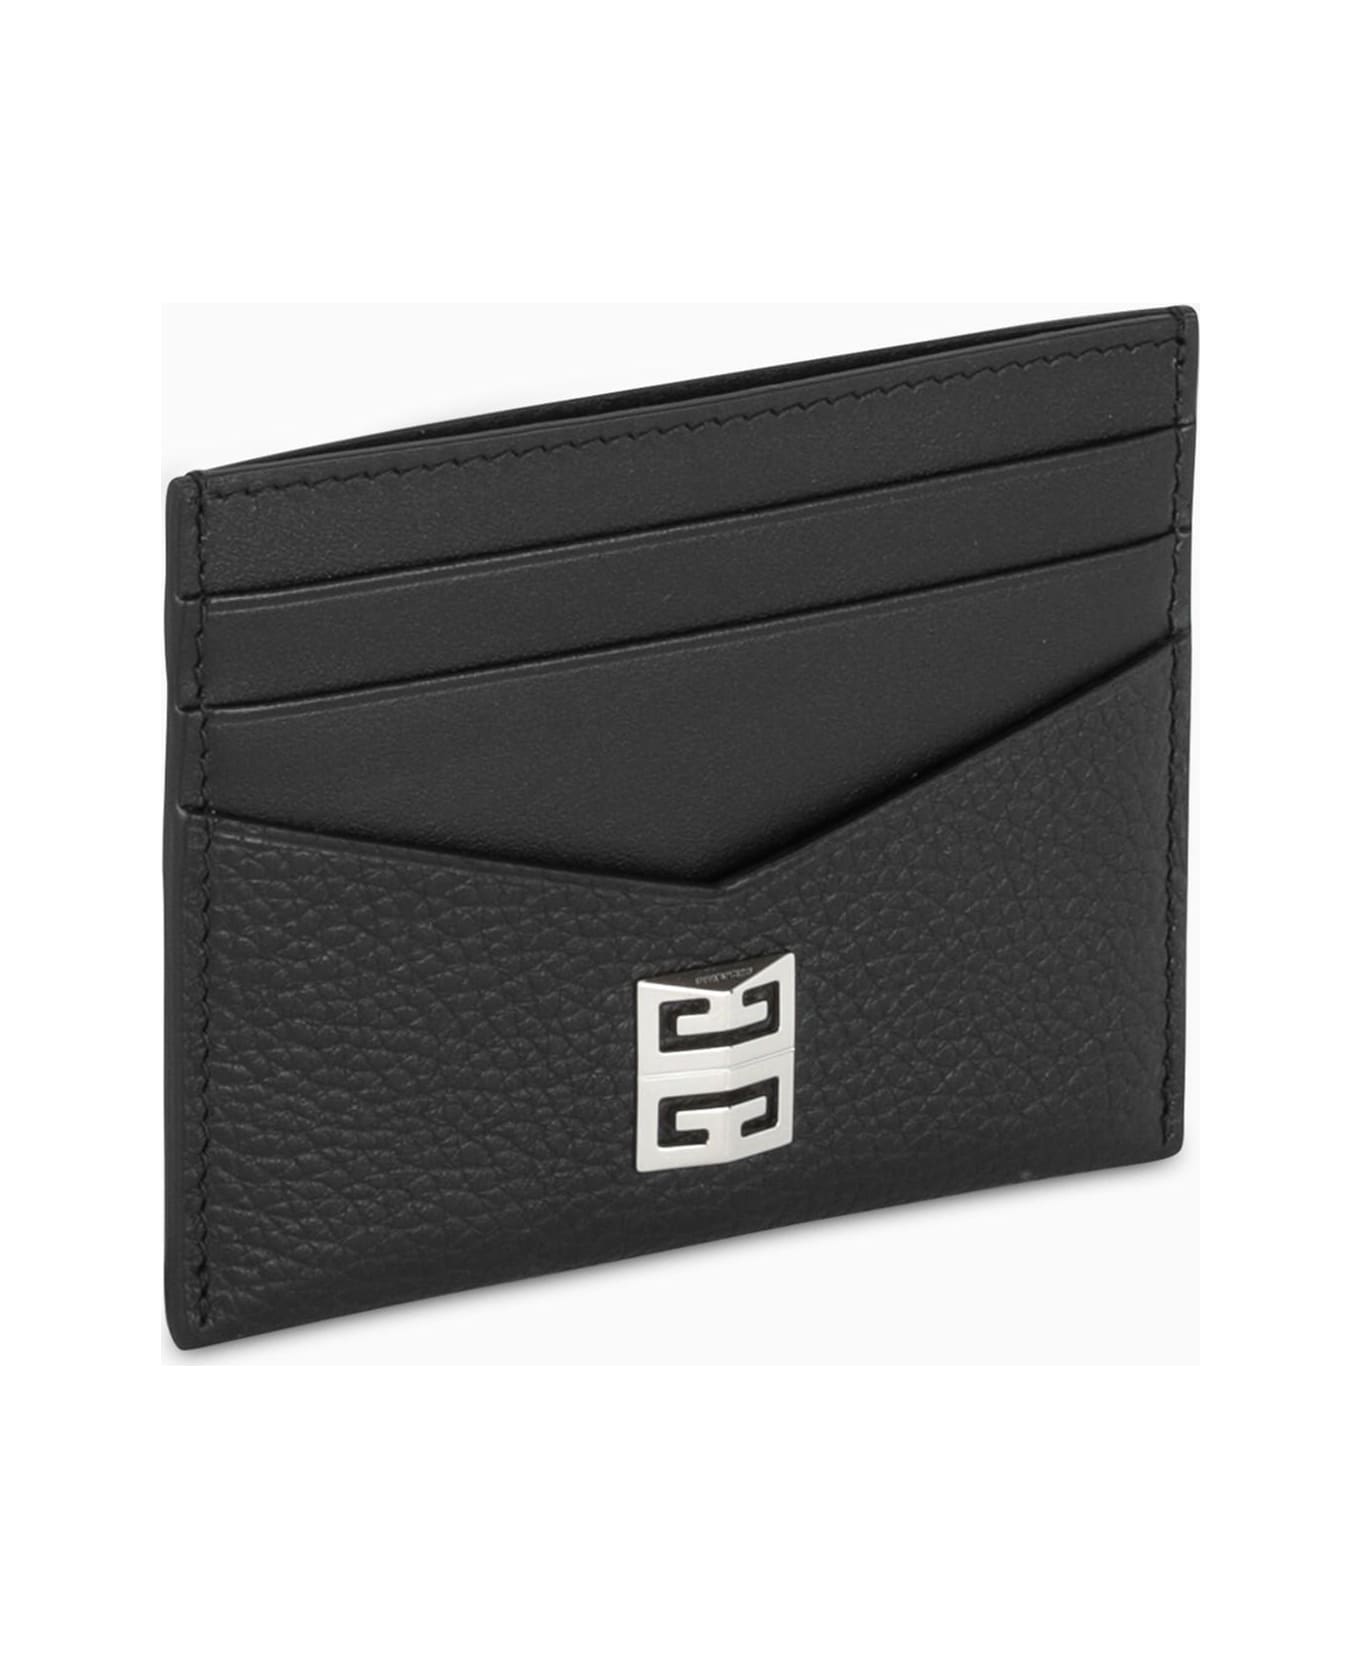 Givenchy coat Black Credit Card Holder - Black